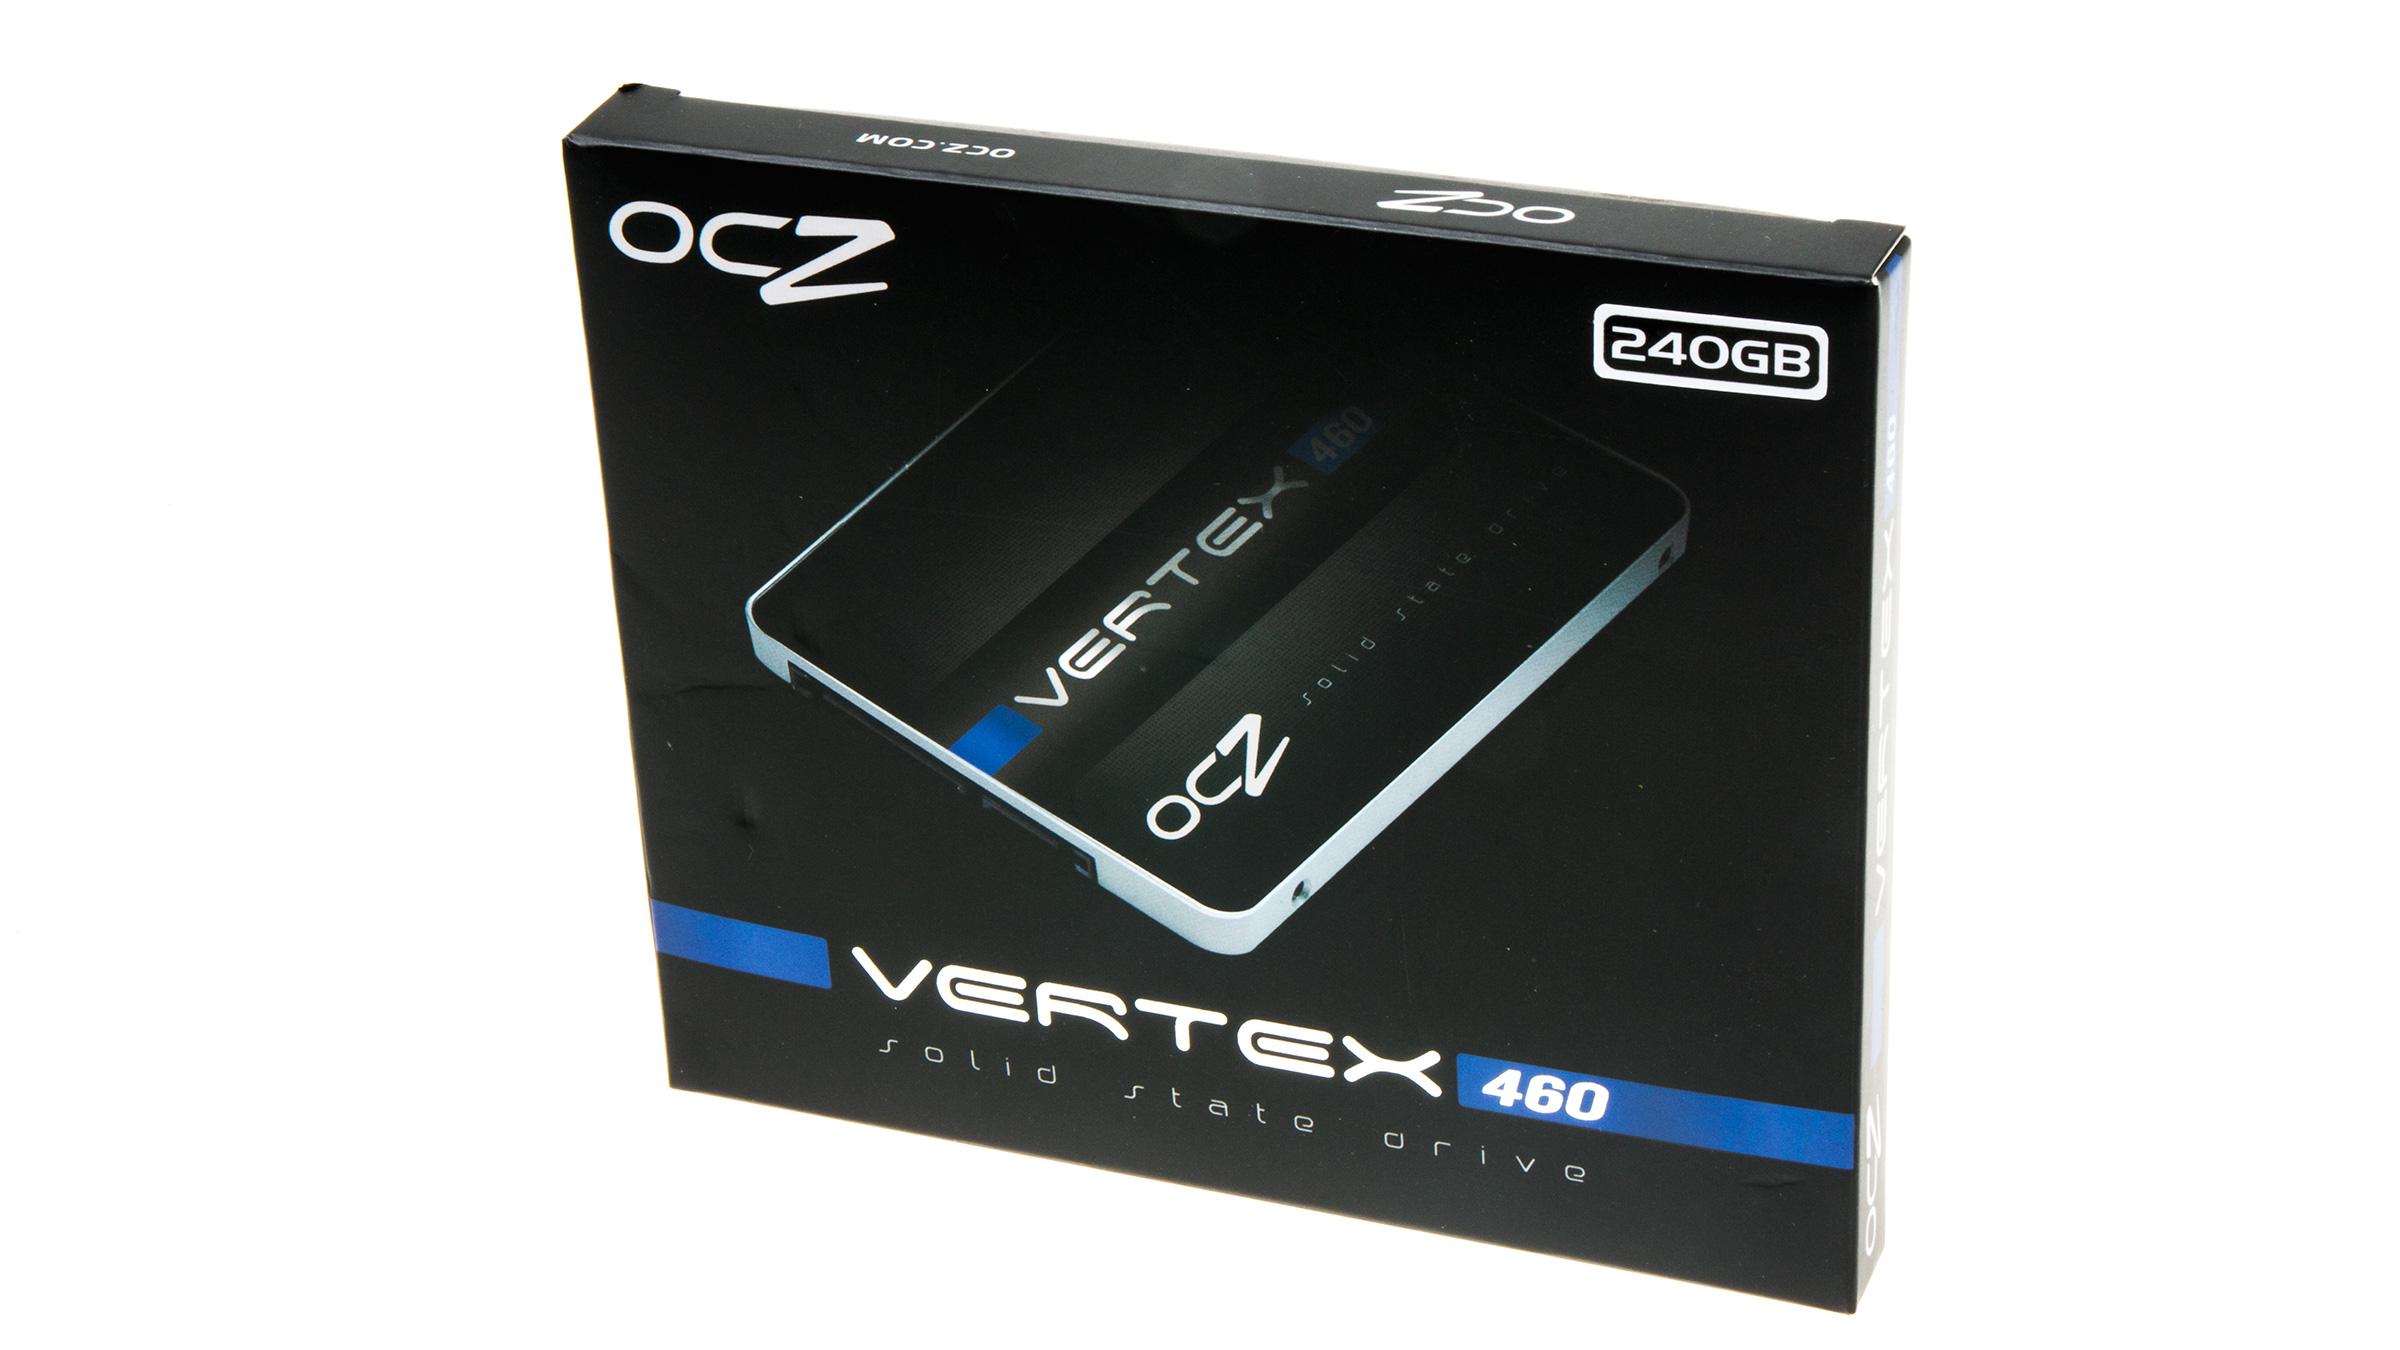 OCZ Vertex 460: Produkteske. Den nye logoen rakk de ikke å få med.Foto: Varg Aamo, Hardware.no